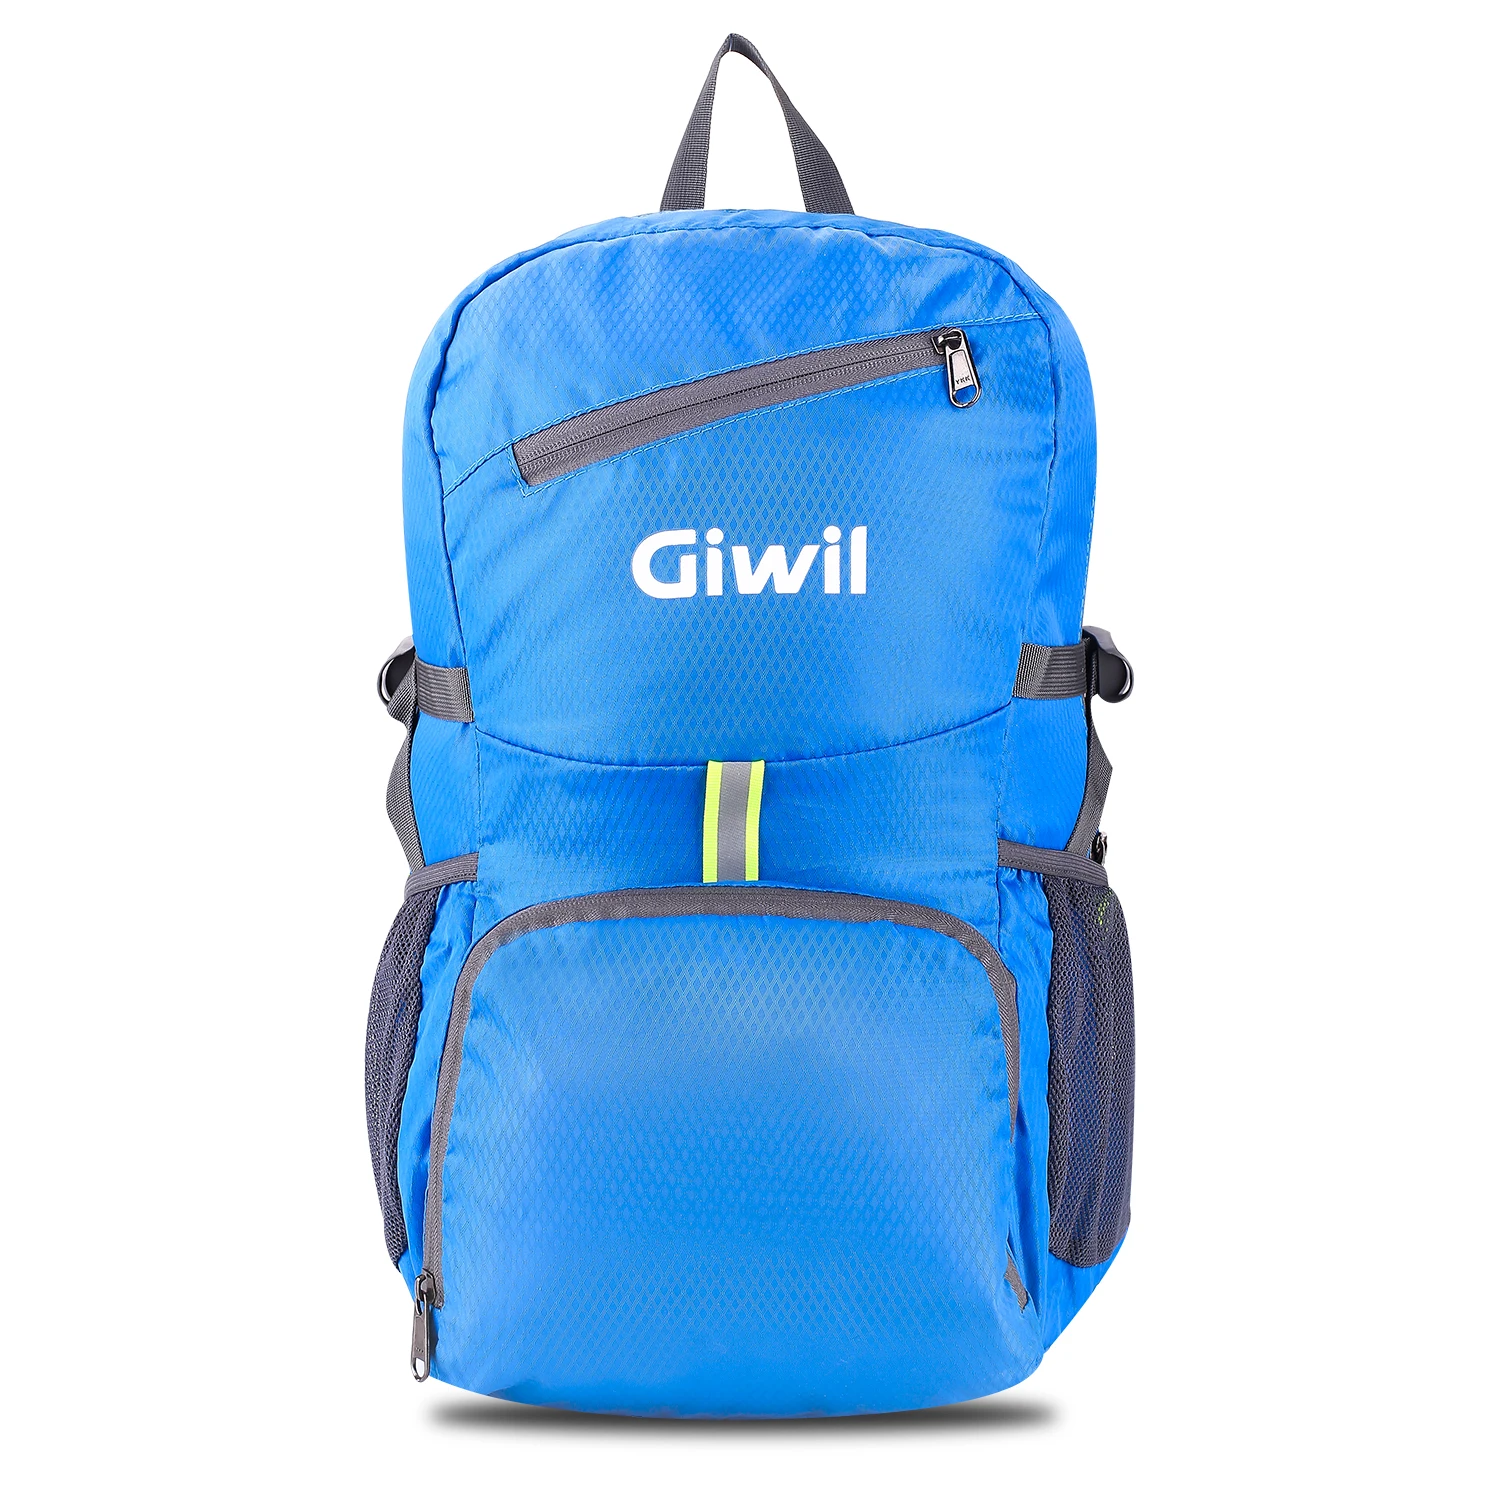 Легкий складной прочный походный рюкзак Giwil 30L складной походный рюкзак для мужчин, женщин и подростков